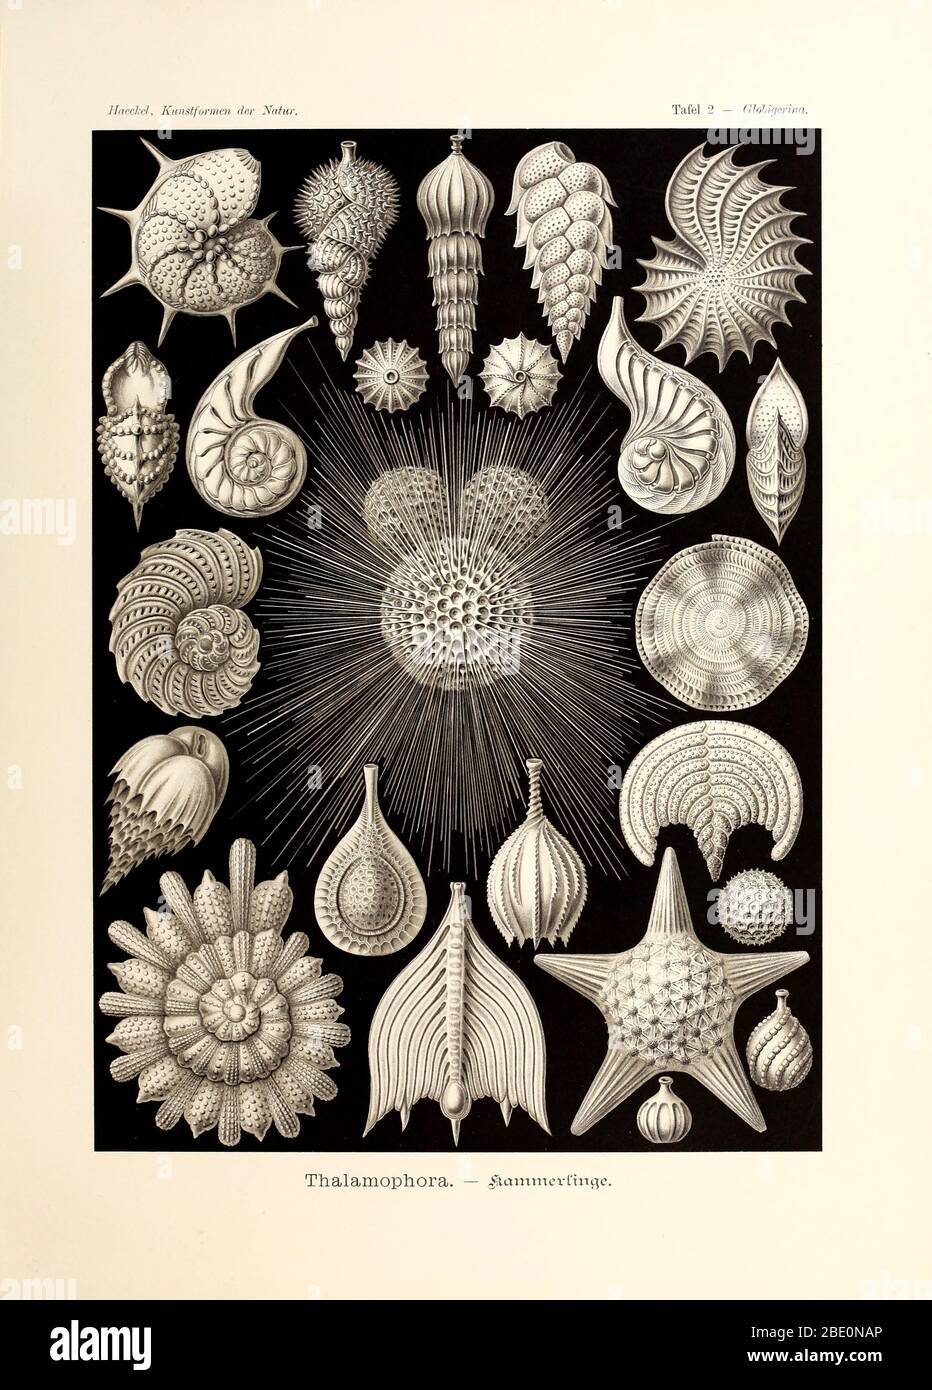 Thalamphora from Ernst Haeckel's Kunstformen der Natur, 1904 Stock Photo